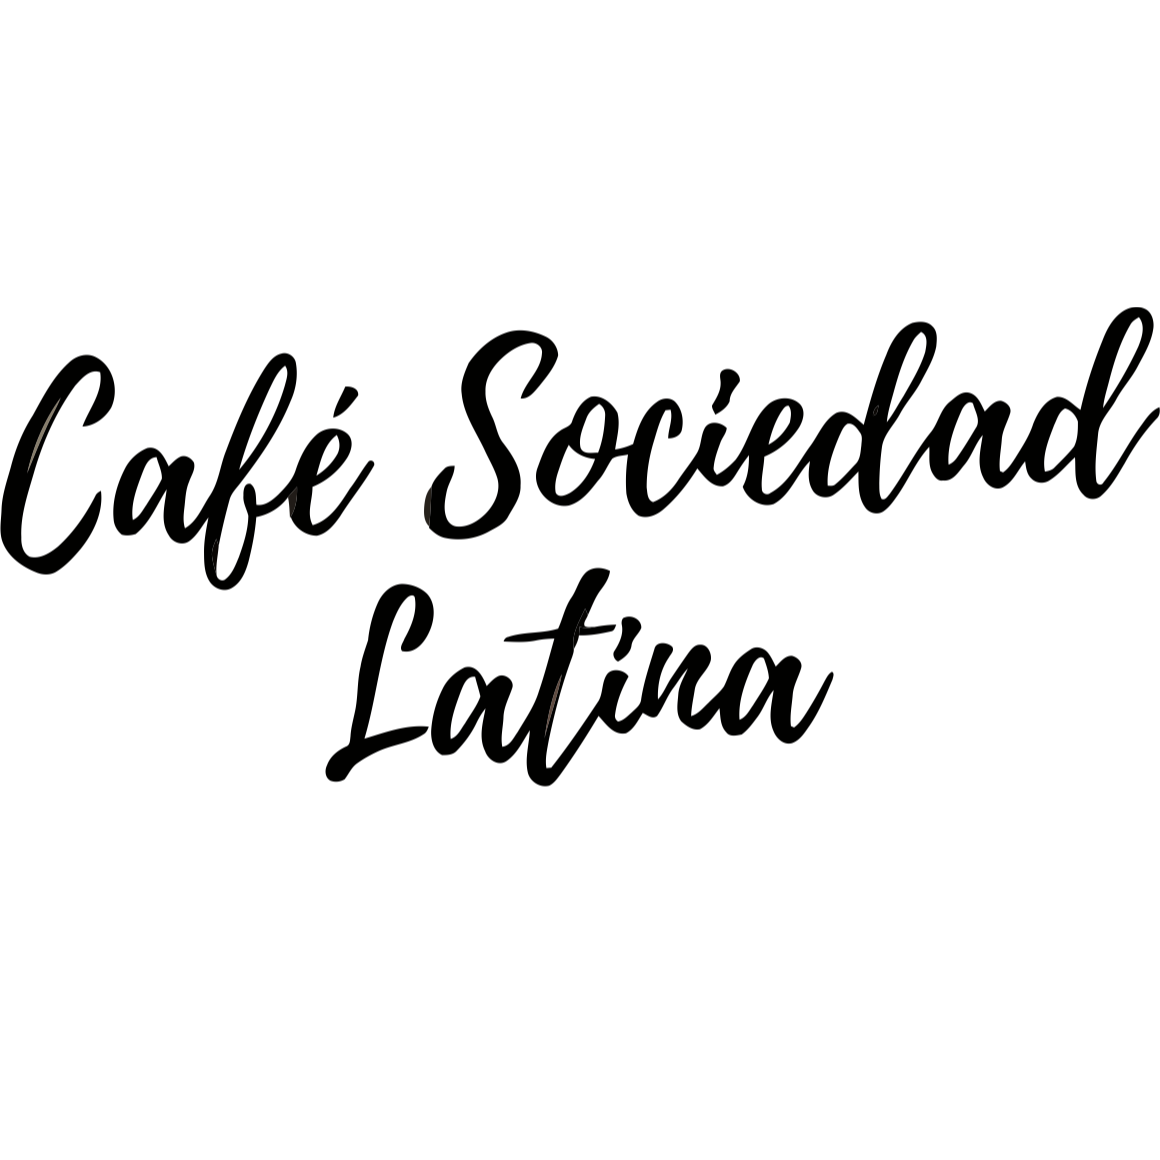 Cafe Sociedad Latina - Huntington Park, CA 90255 - (323)476-7074 | ShowMeLocal.com